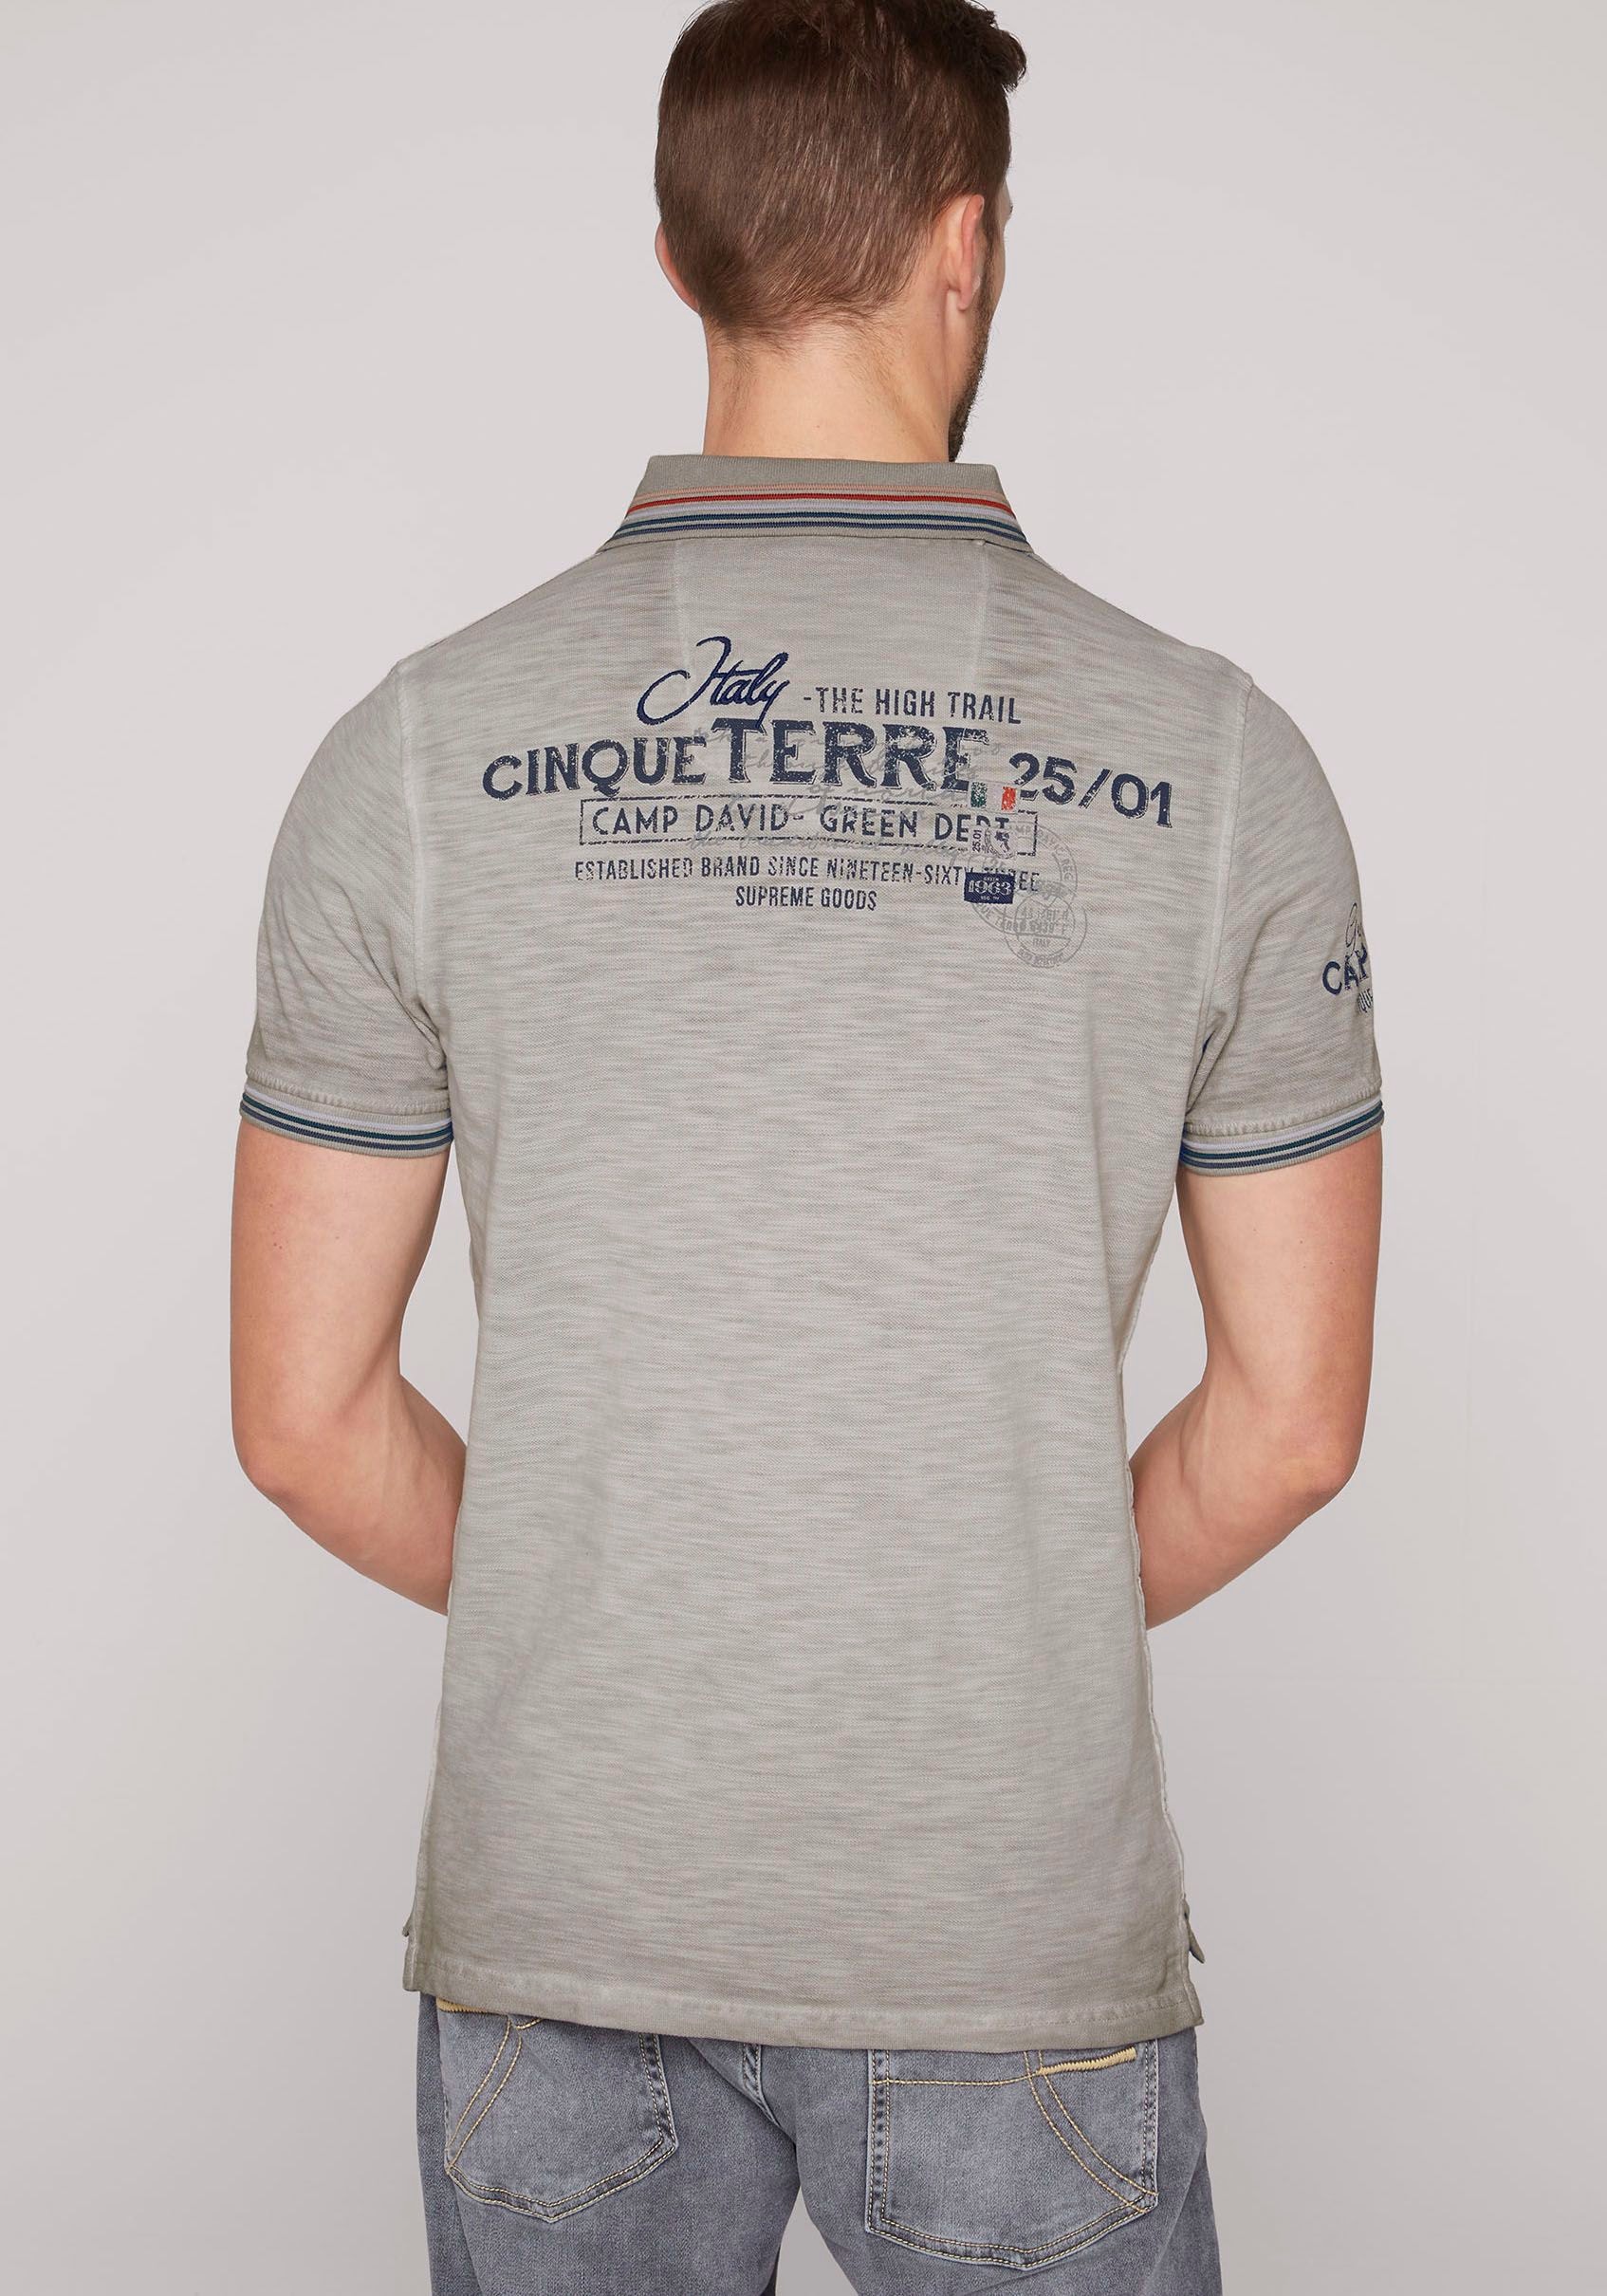 CAMP DAVID Poloshirt, mit Kontrastnähten online shoppen bei OTTO